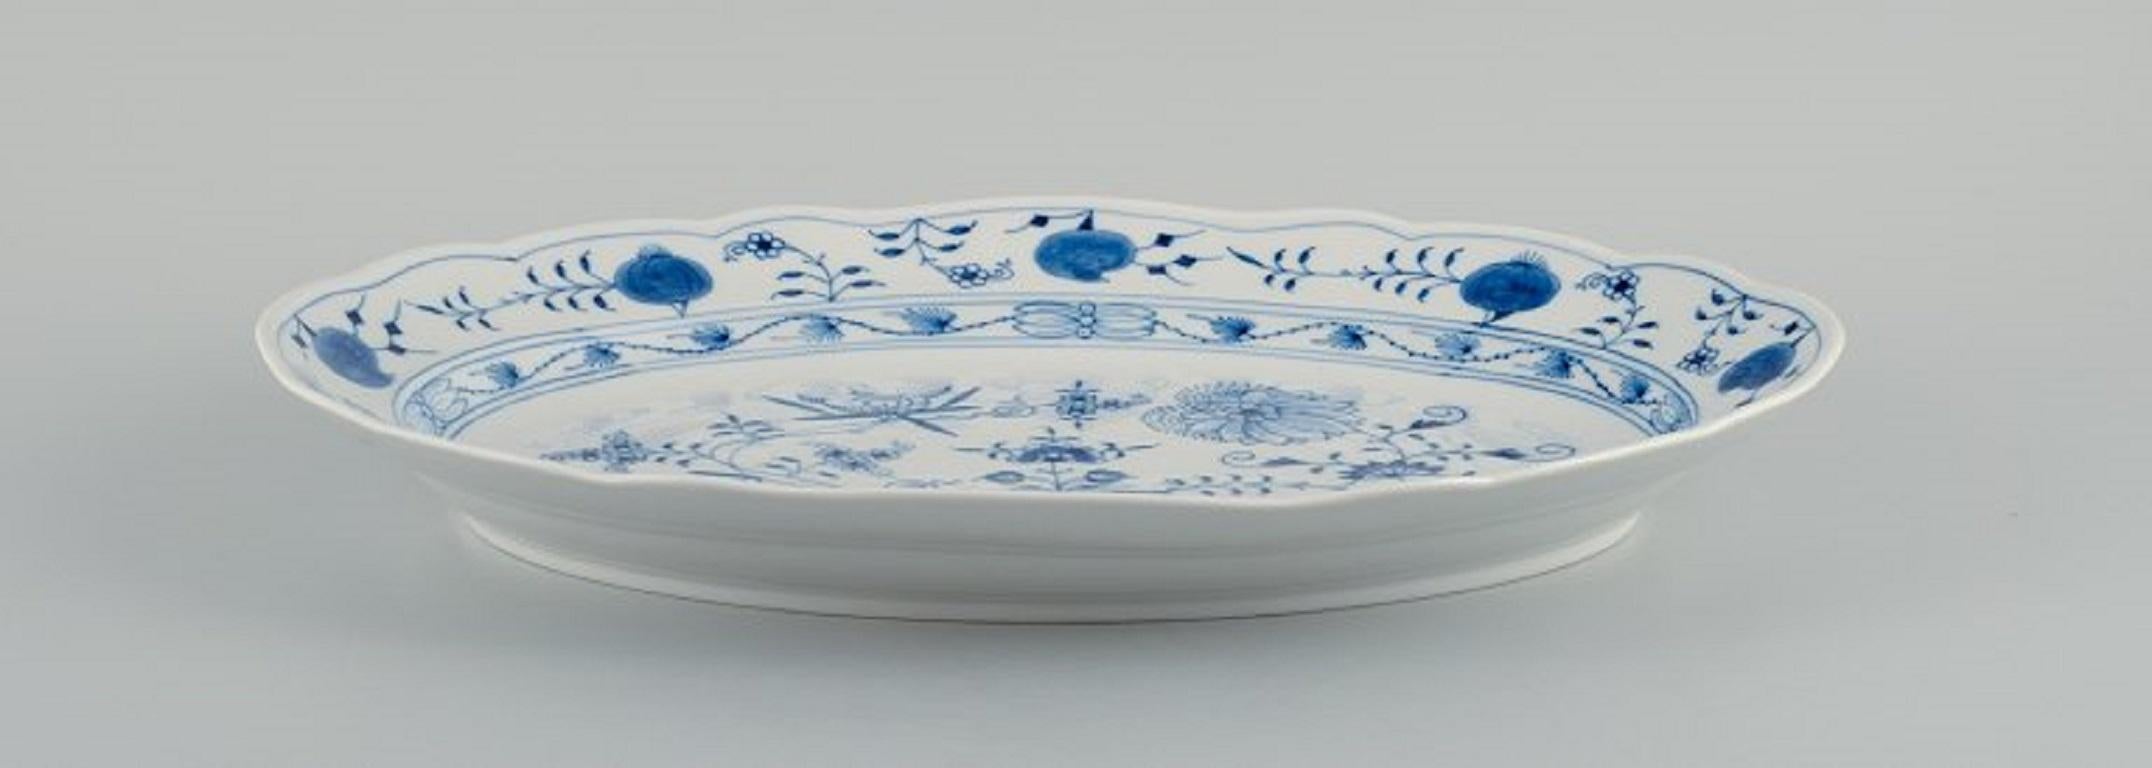 Meissen, plato ovalado azul cebolla en porcelana.
hacia 1900.
Cuarta calidad de fábrica.
Perfecto estado.
Marcado.
Dimensiones: L 41,5 x P 30,5 x Alt 6,0 cm.